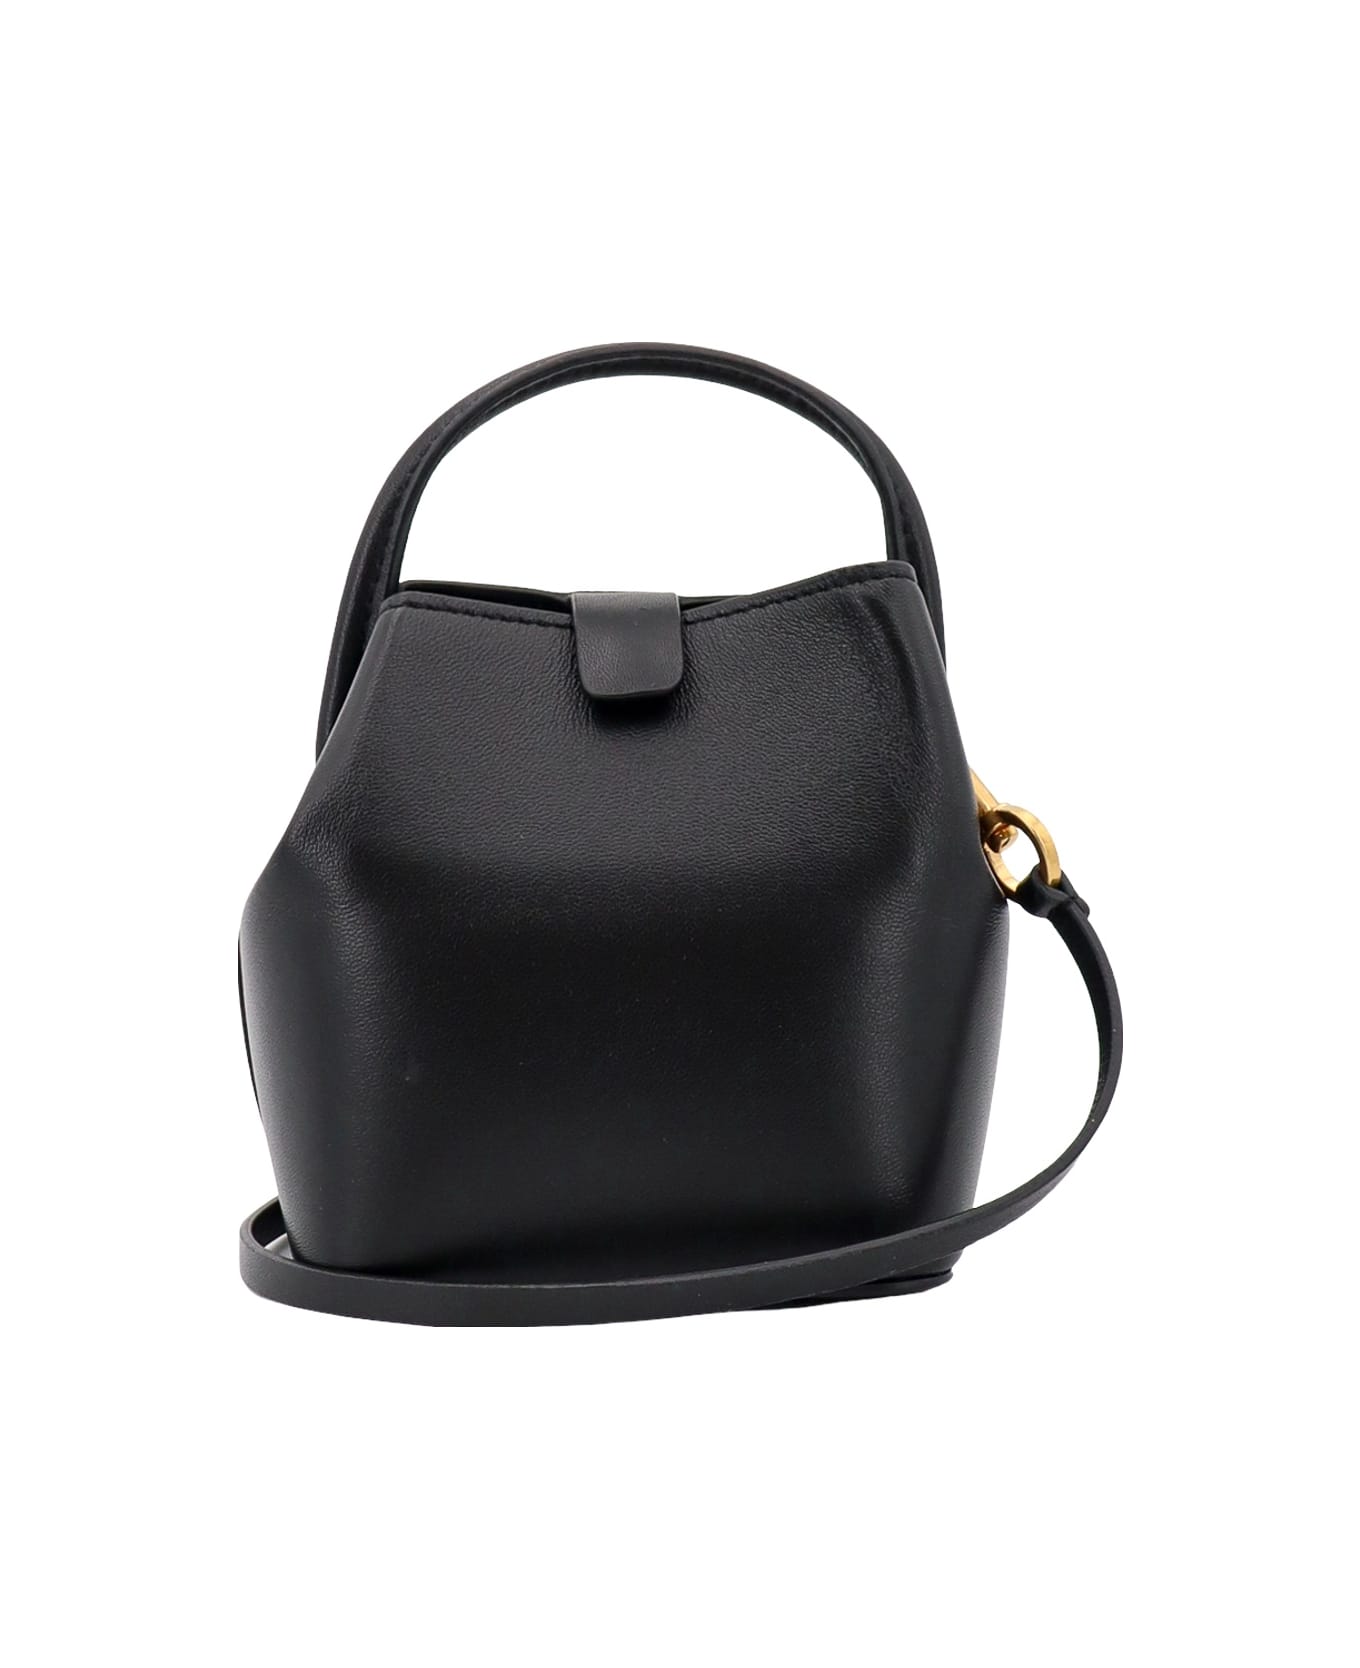 Valentino Garavani Micro Bucket Bag - Black